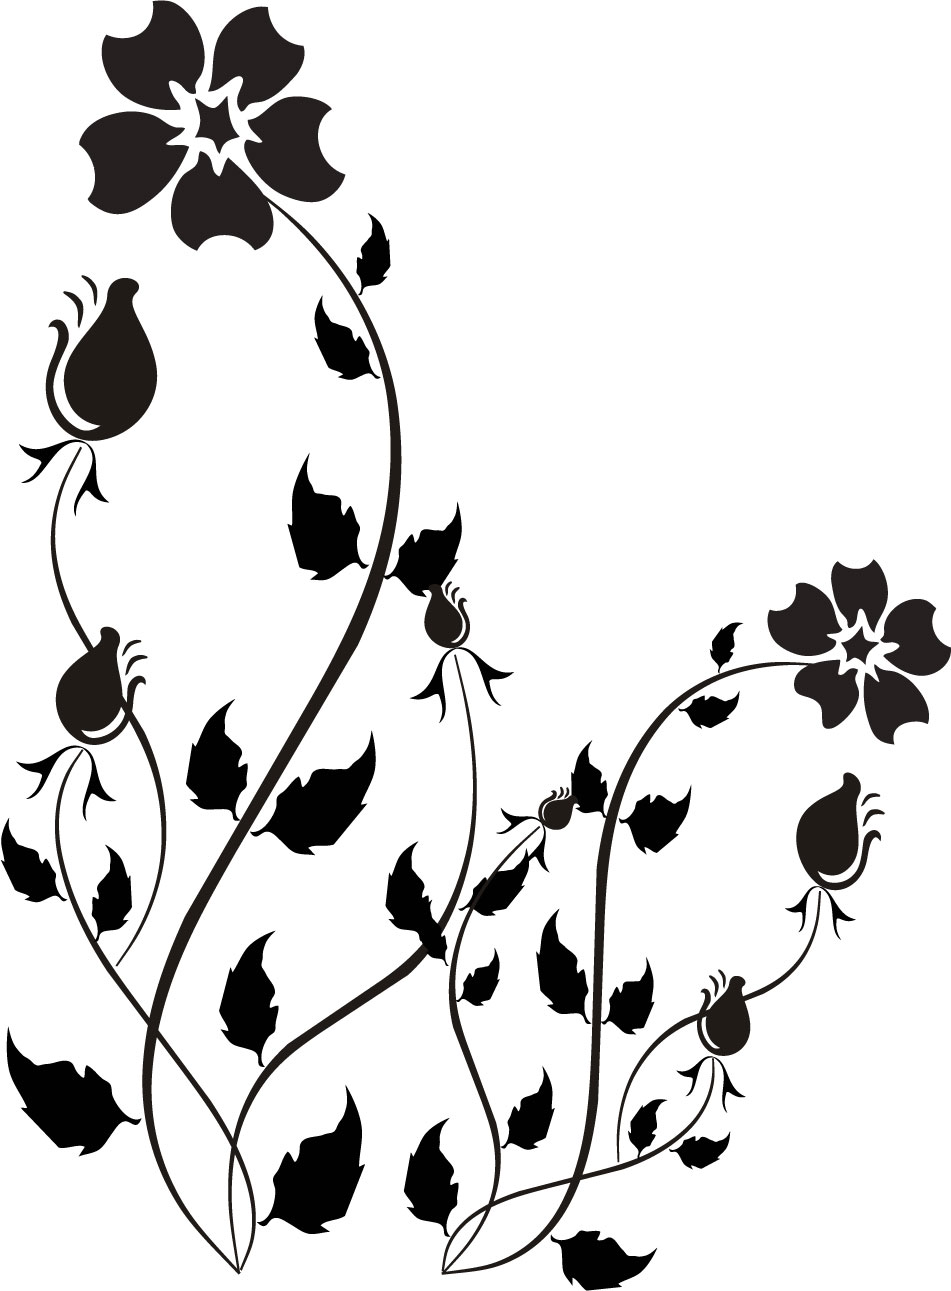 ポップでかわいい花のイラスト フリー素材 No 1292 白黒 葉 つぼみ